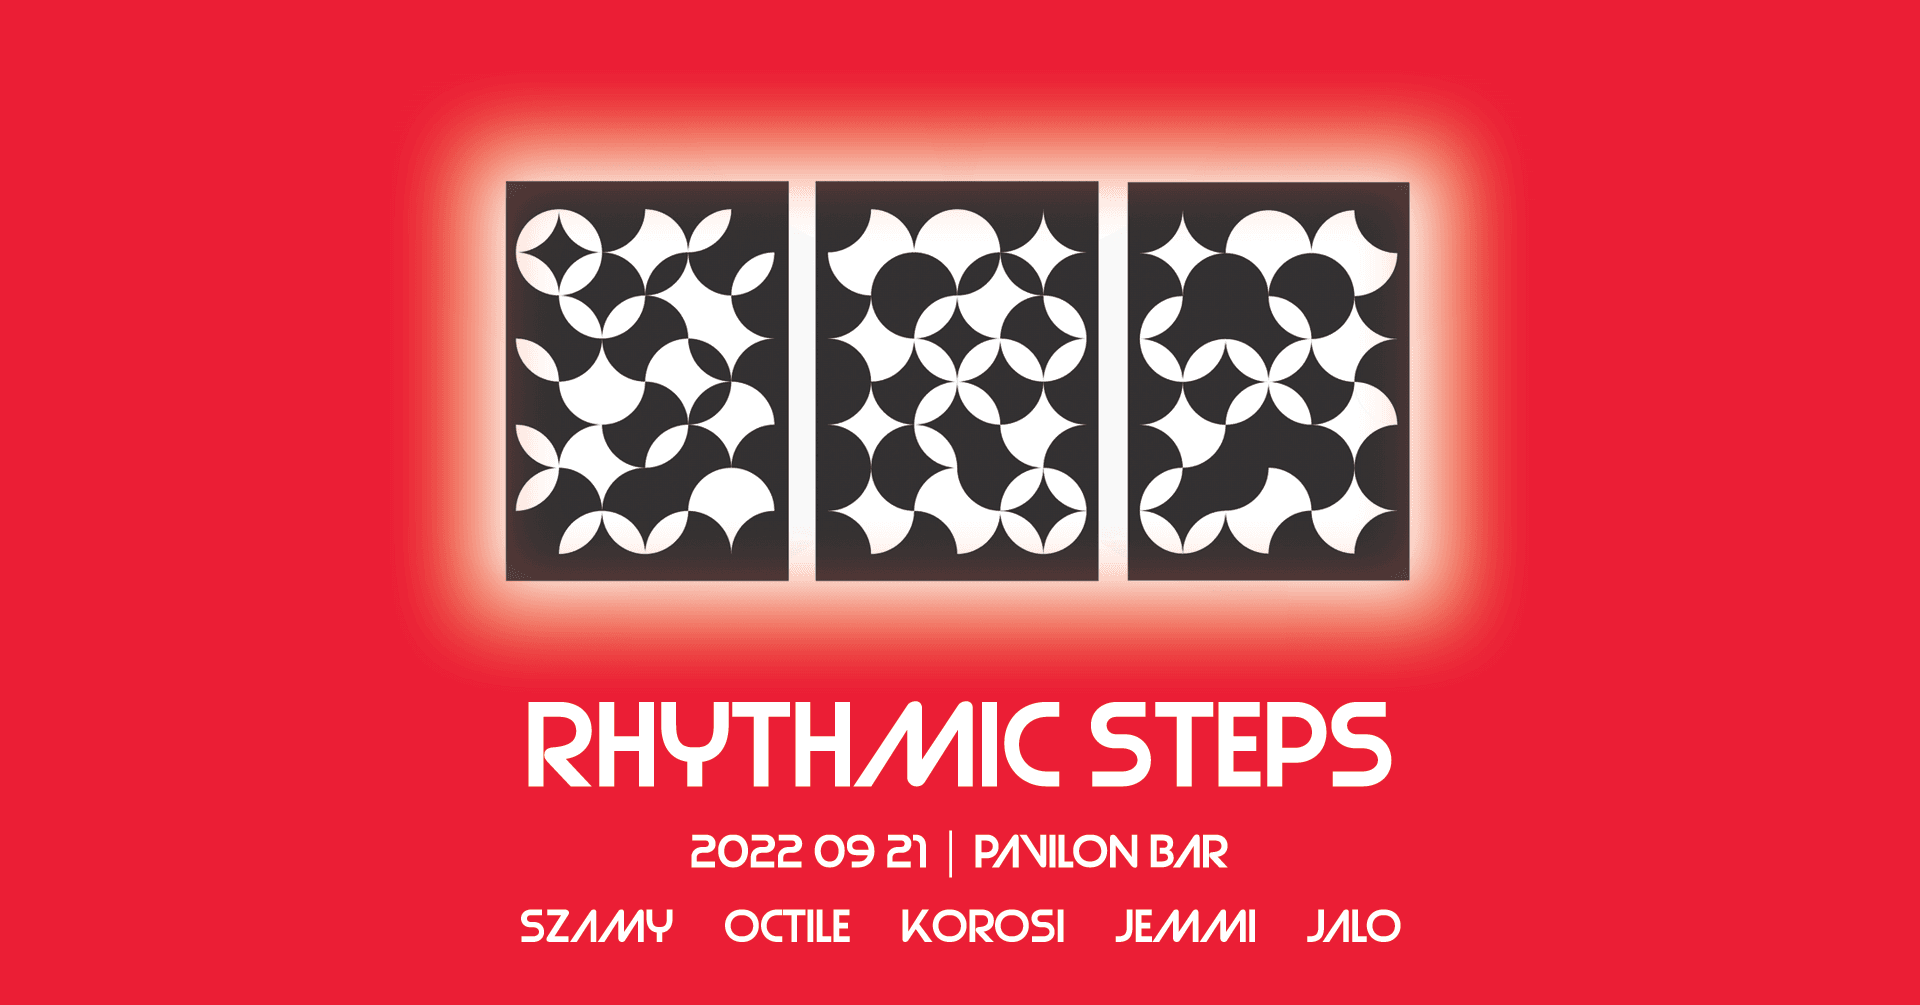 Rhythmic Steps X - フライヤー裏